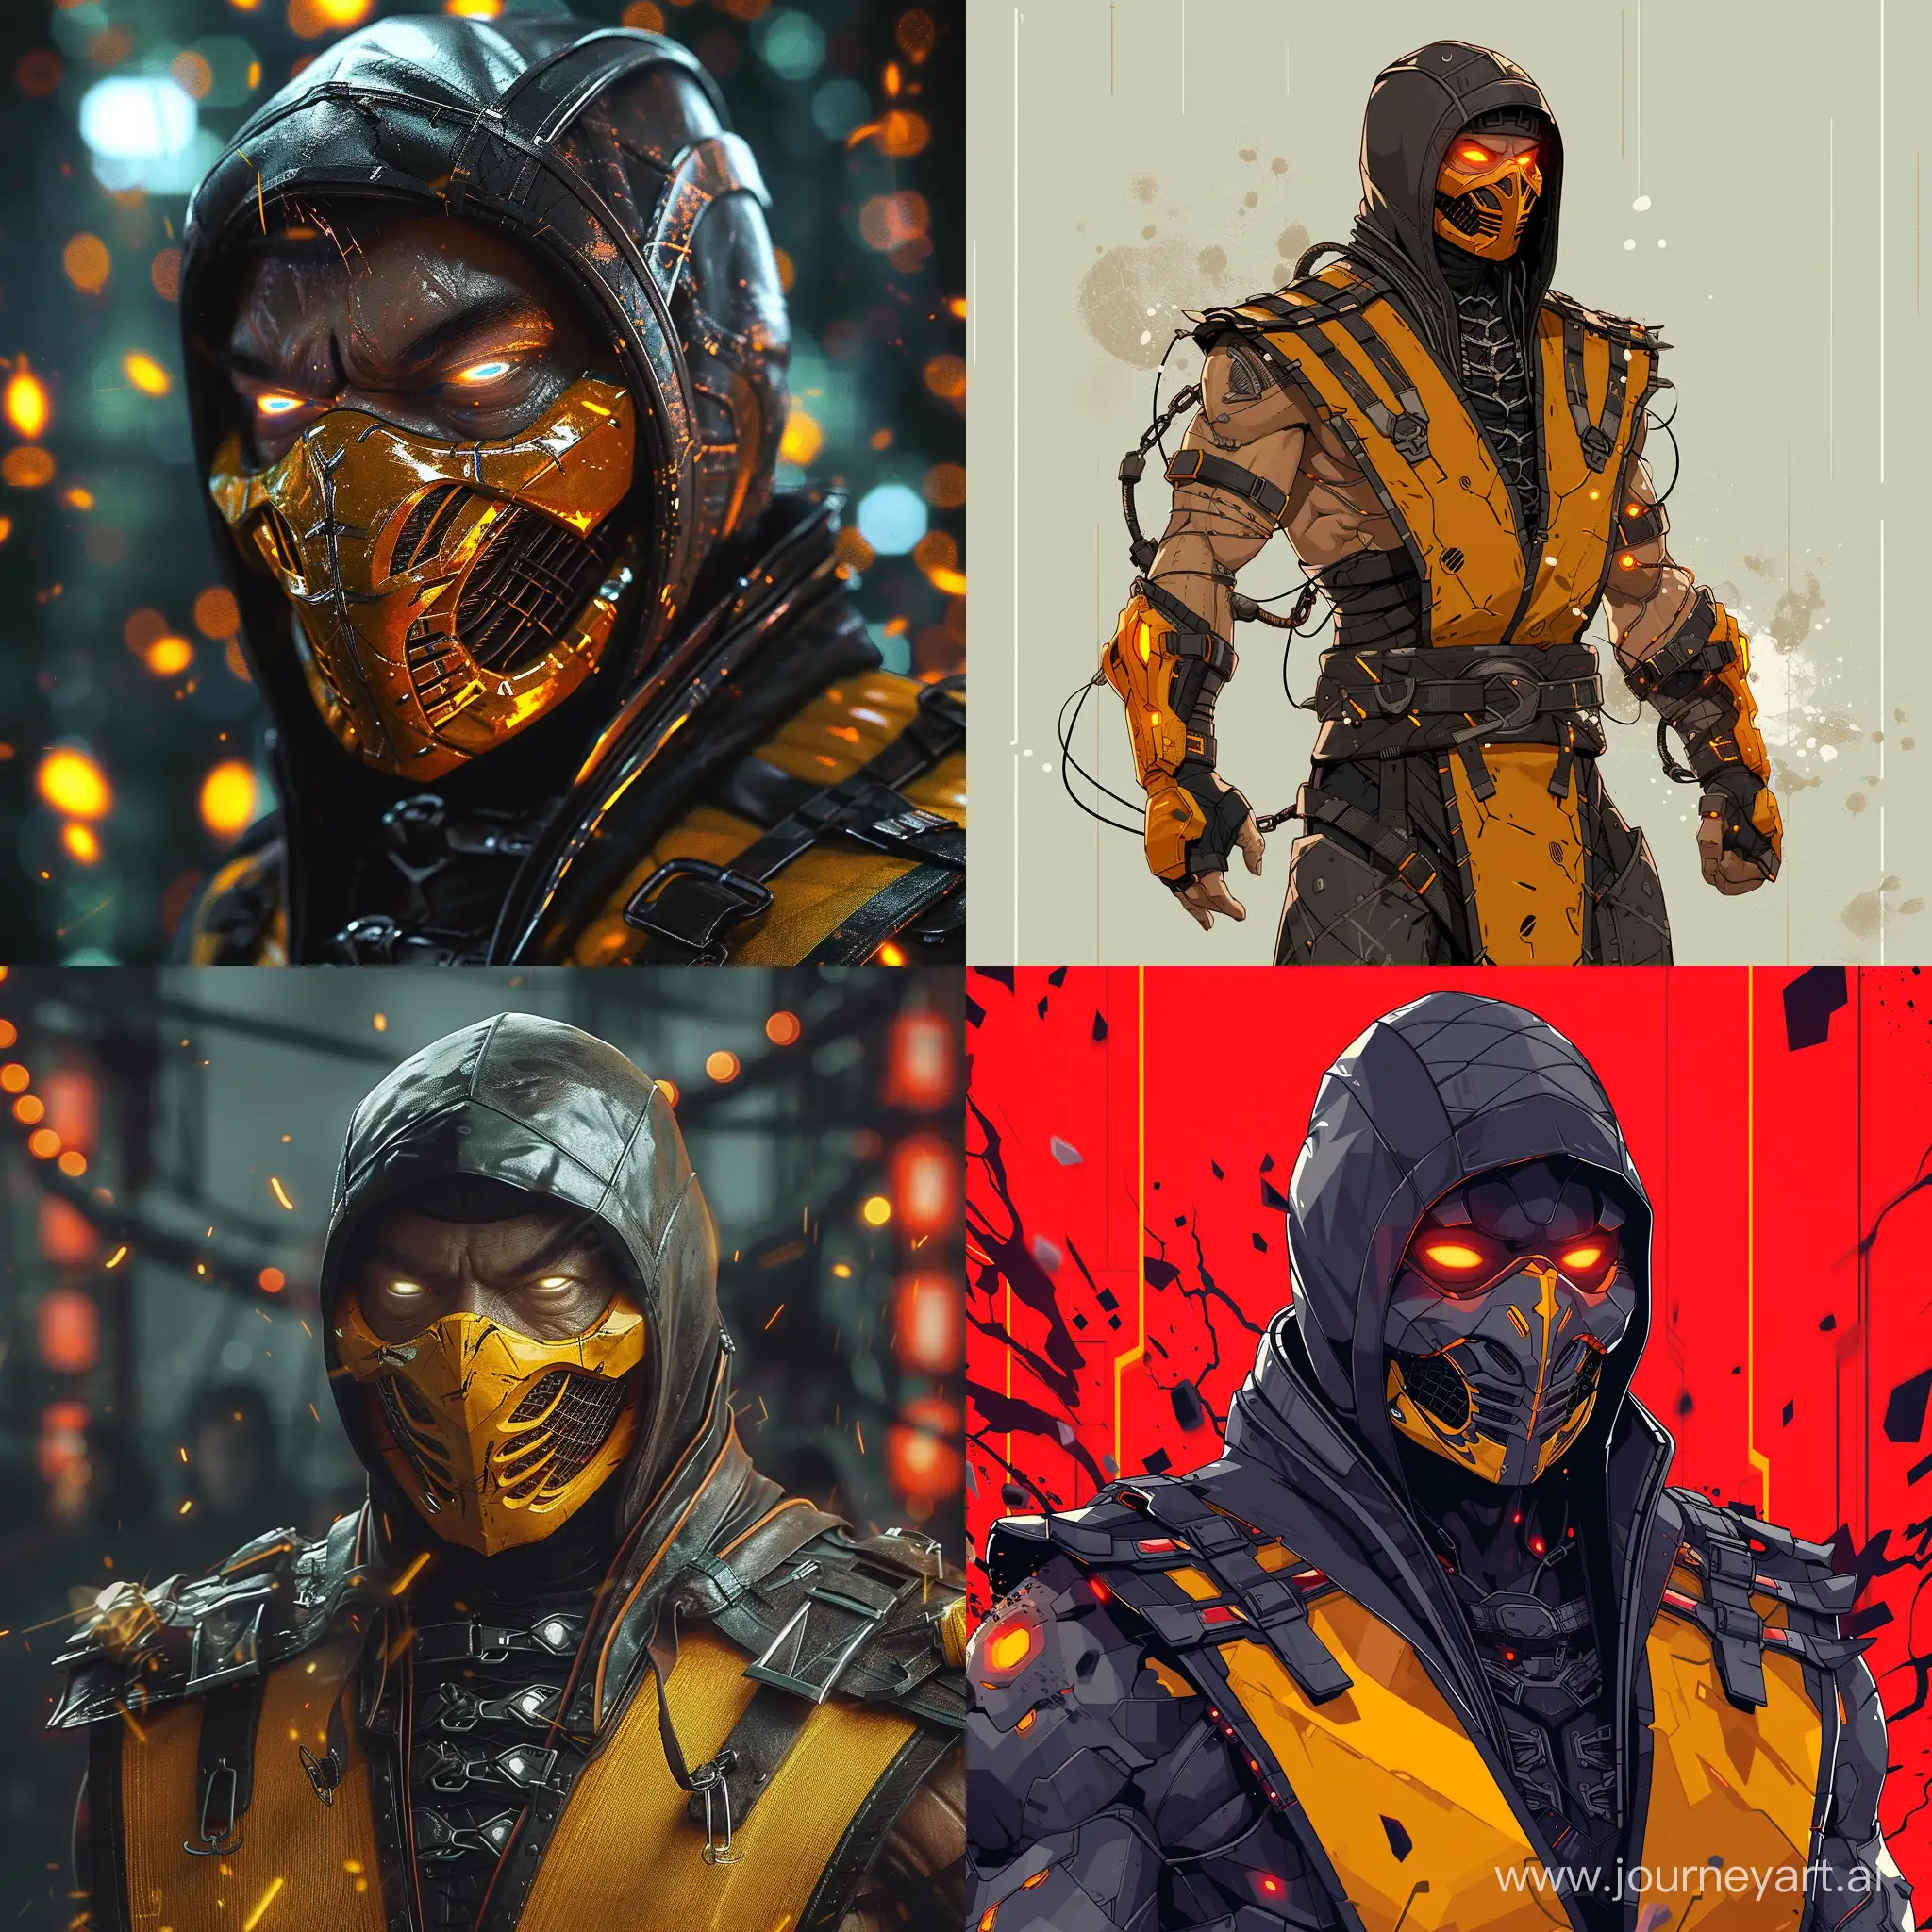 Cyberpunk-Scorpion-from-Mortal-Kombat-Ready-for-Battle